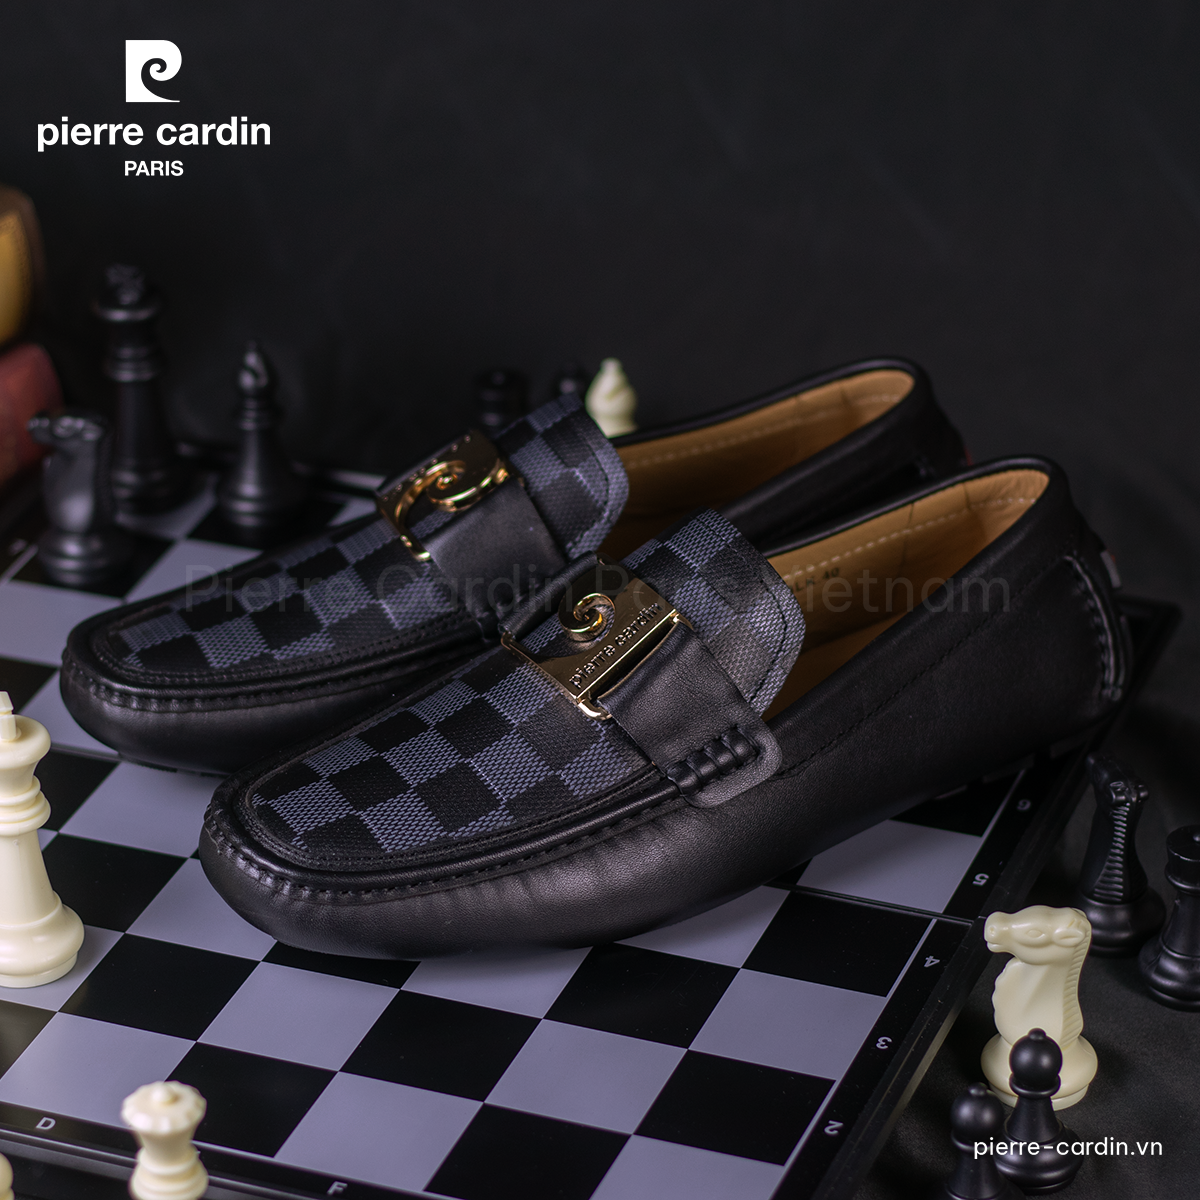 Hình 1 - Mẫu Giày Pierre Cardin - PCMFWLH 525 (Black)